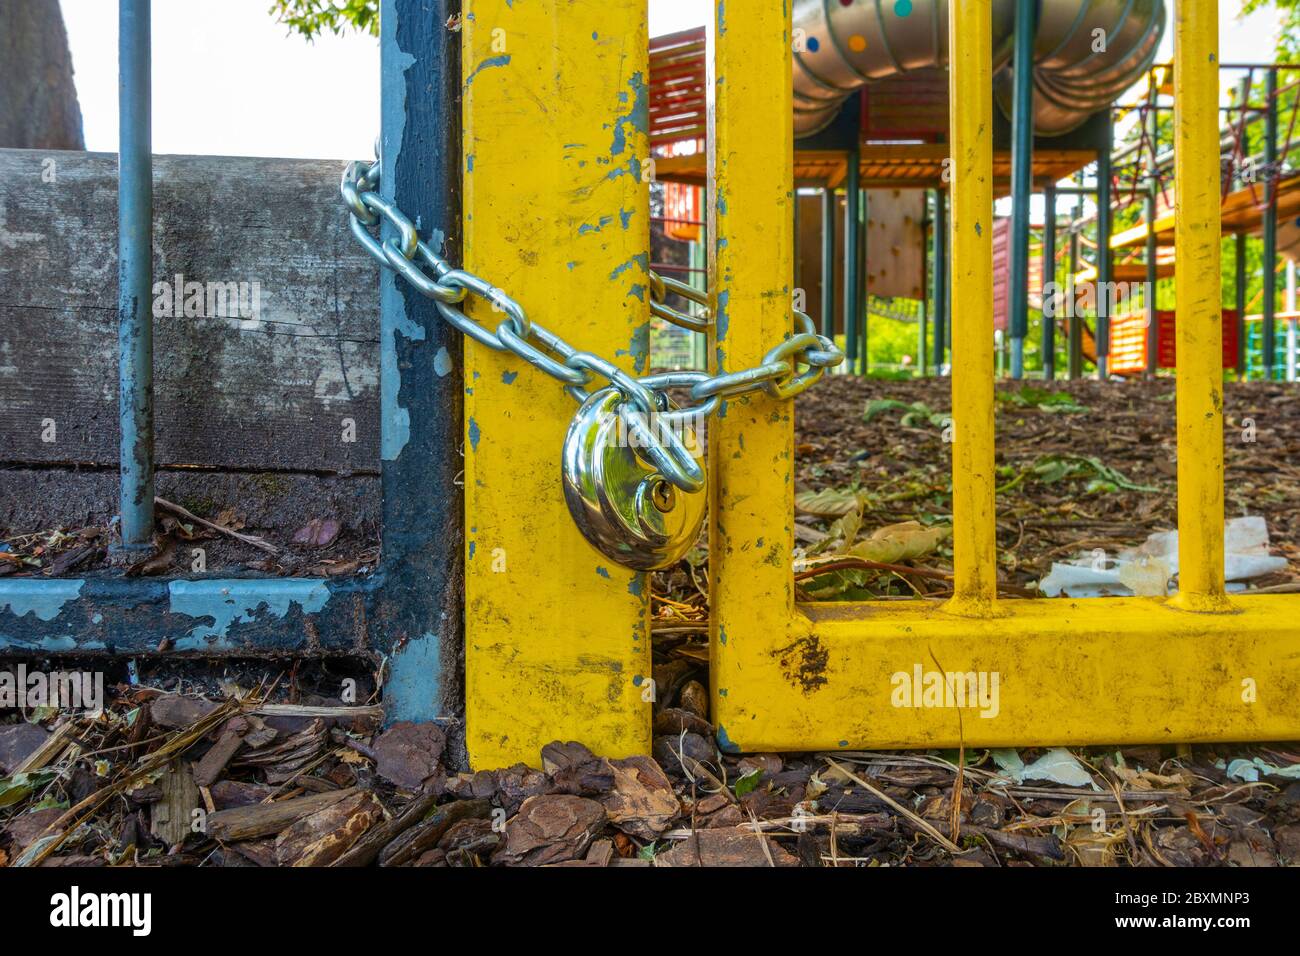 La porte d'entrée d'une aire de jeux pour enfants est fermée par une chaîne et un cadenas meurt aux règles de distanciation sociale du coronavirus pandémique. Banque D'Images